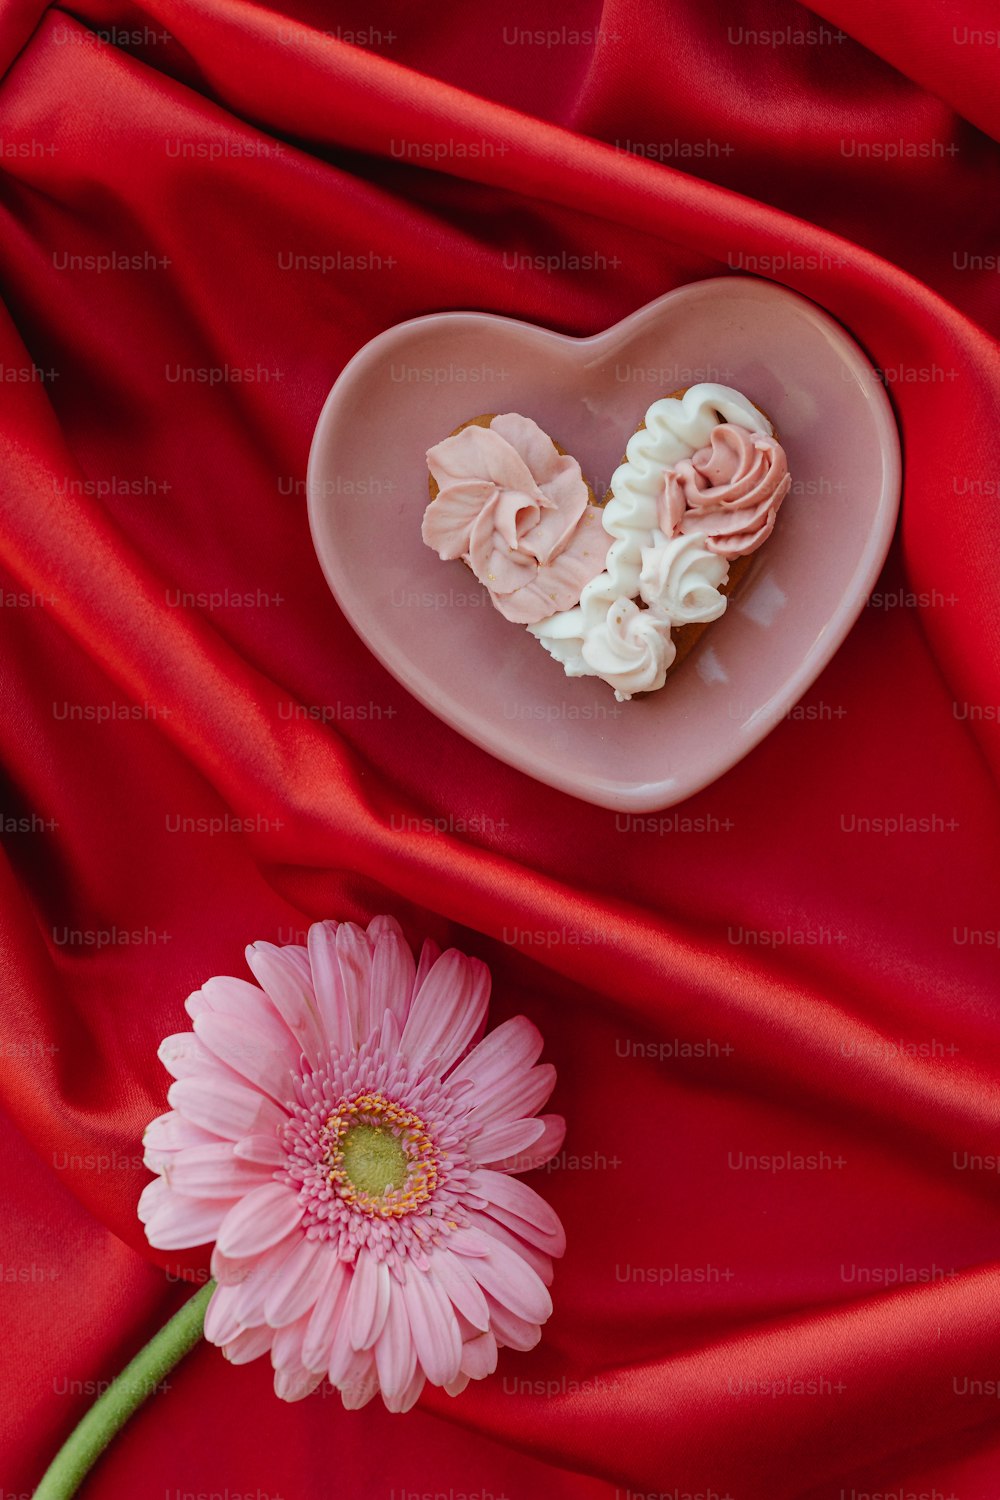 una flor rosa y una galleta en forma de corazón en un paño rojo